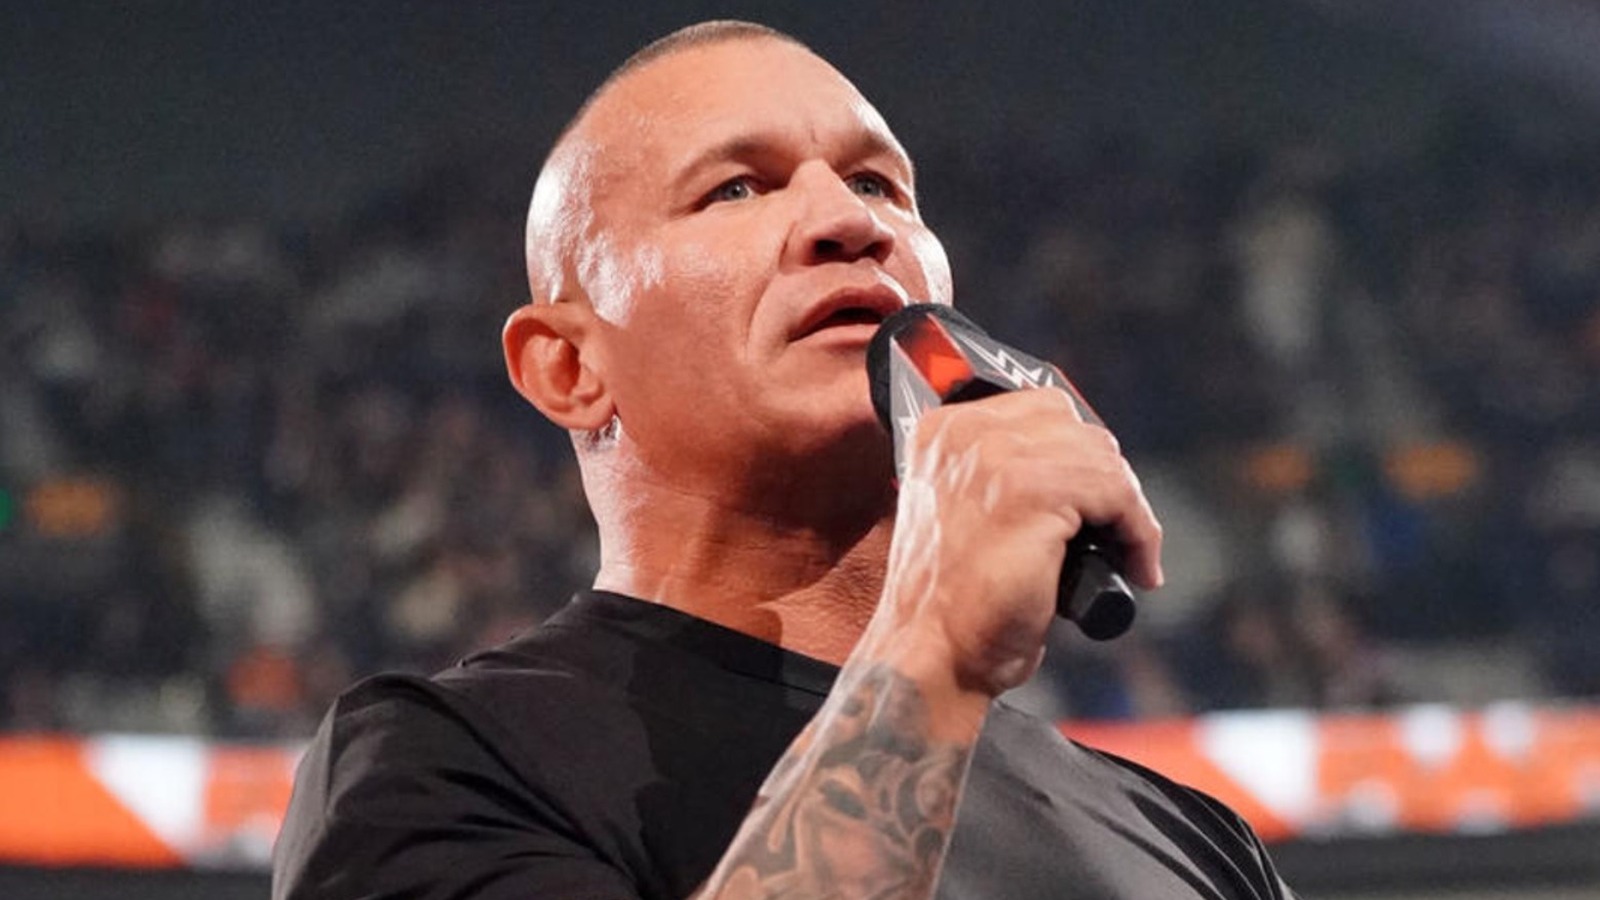 La estrella de la WWE Randy Orton explica por qué solía ser un imbécil (sus palabras)